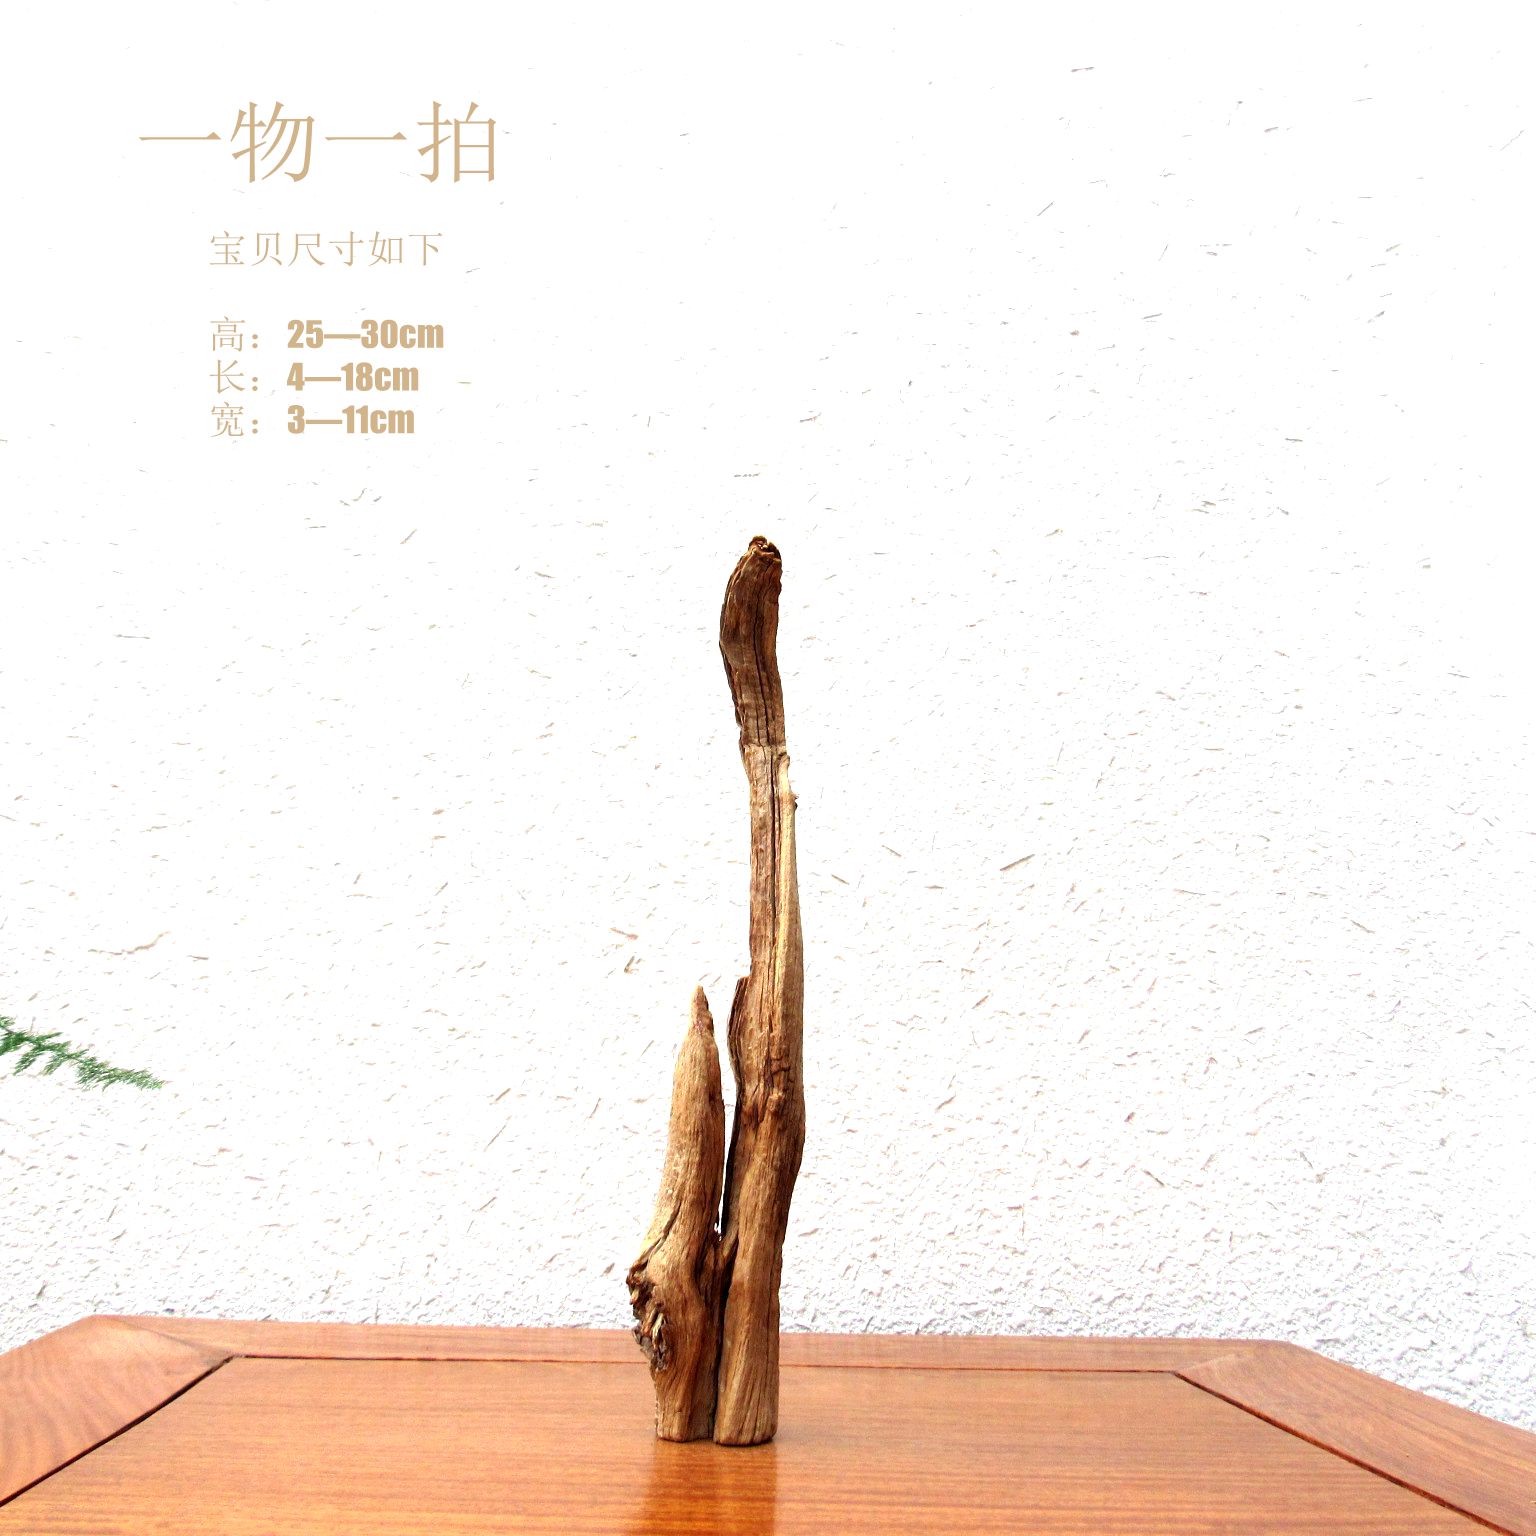 千年胡杨风化老木原木随形根艺摆件自然禅意艺术创意家居收藏饰品